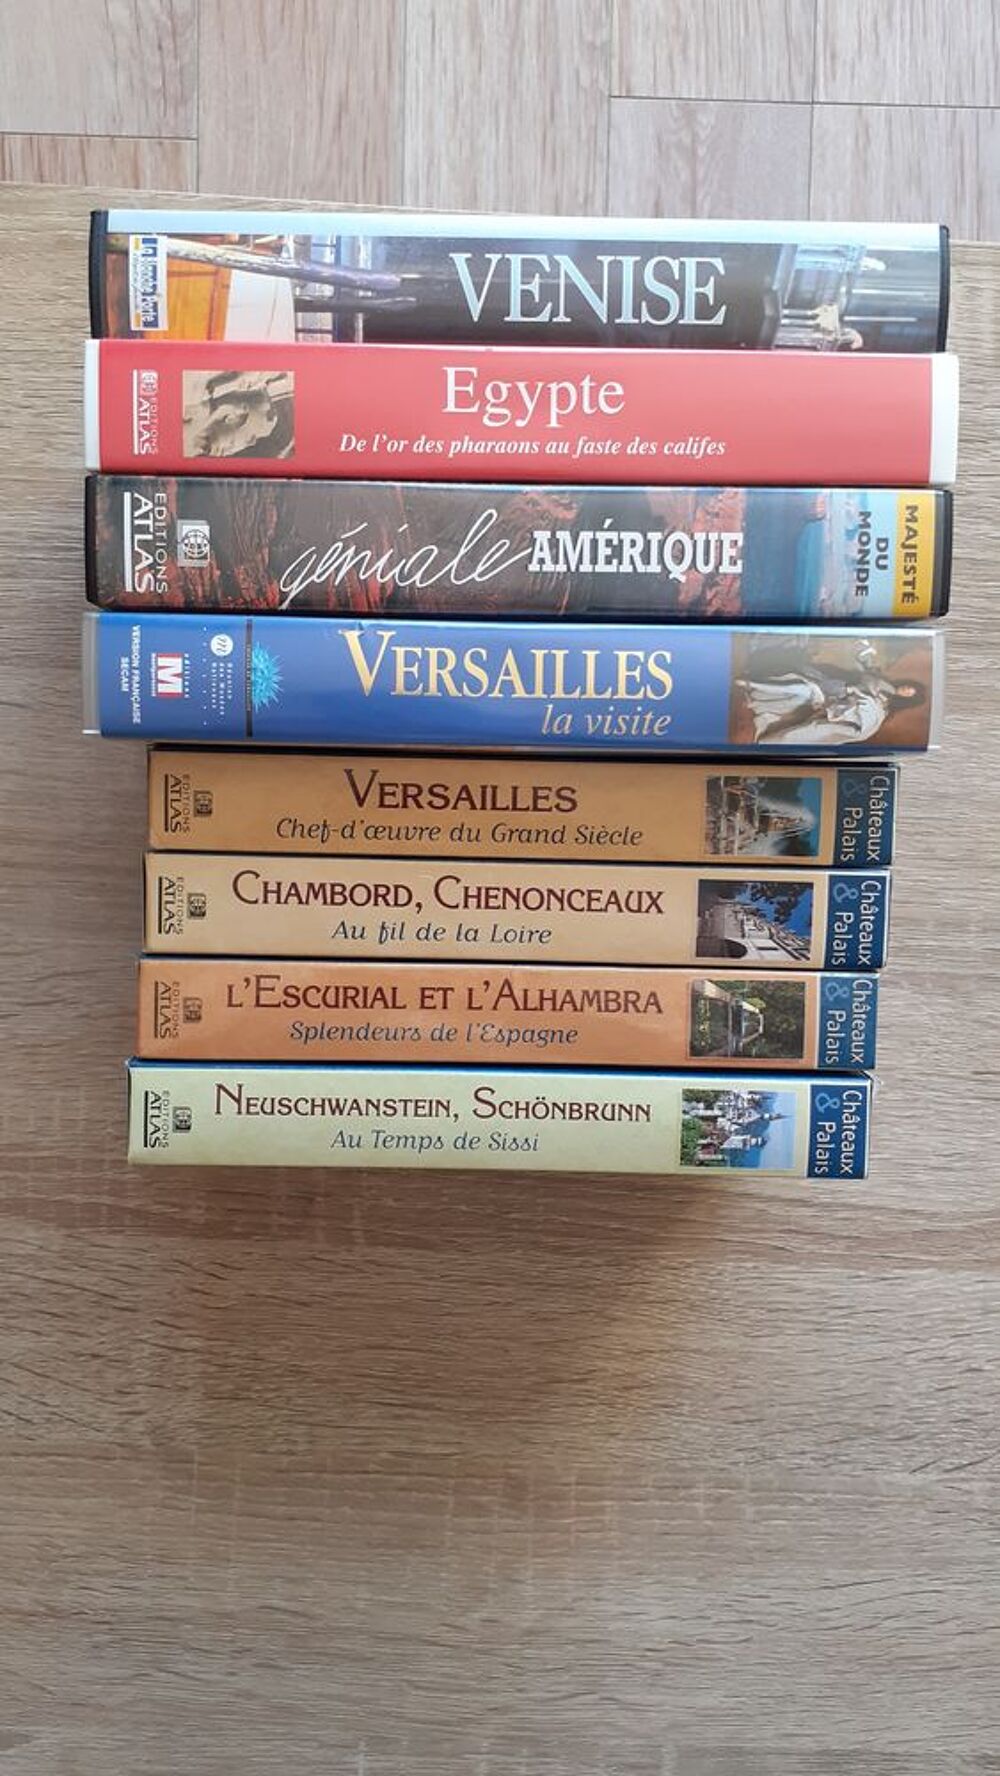 8 Cassettes VHS diverses (Versailles, etc... )
Photos/Video/TV